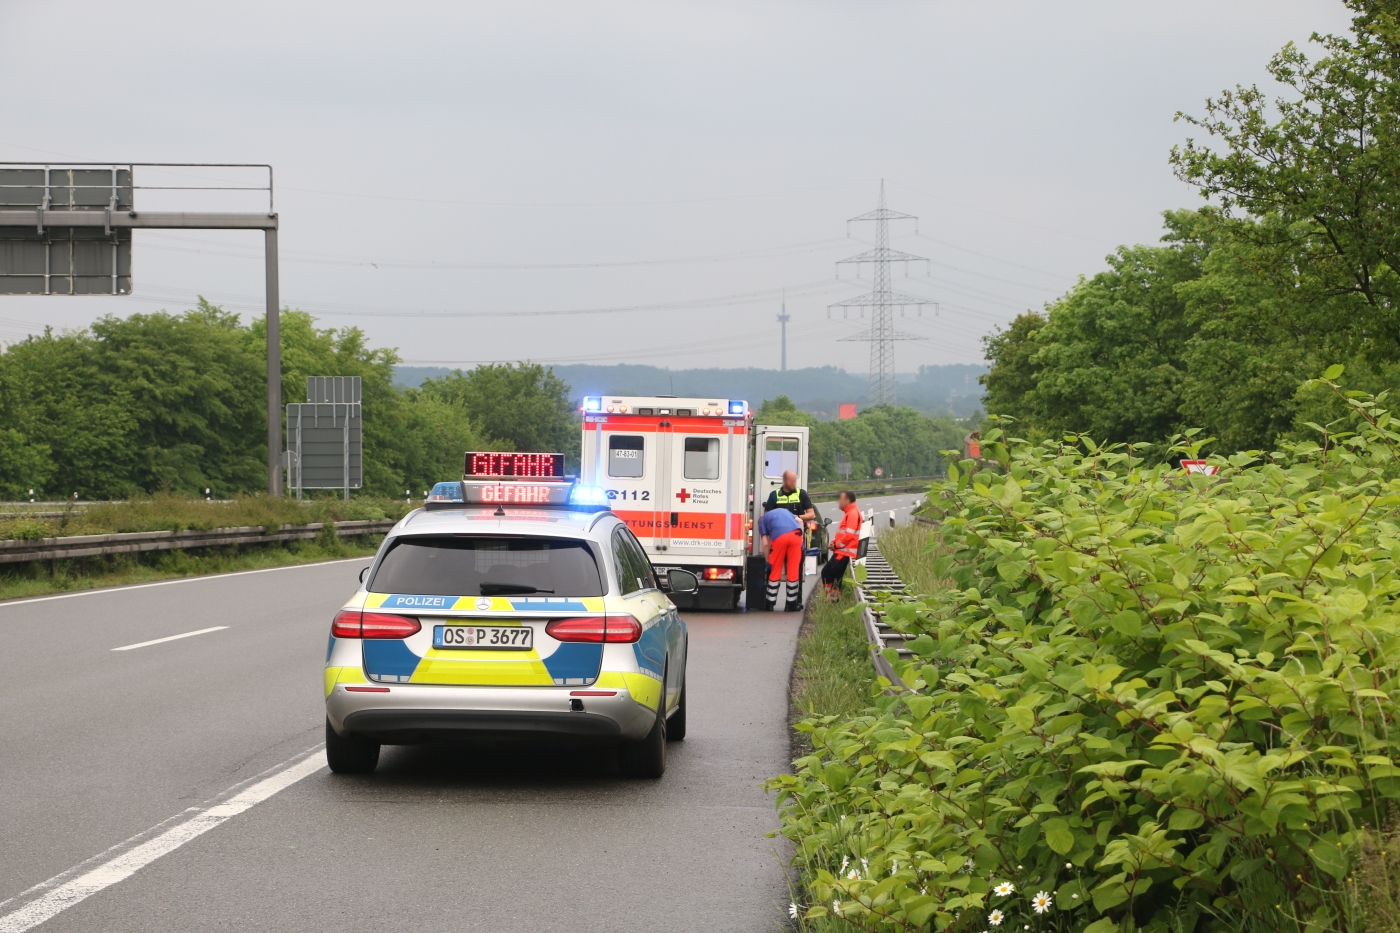 Trotz Überschlag unverletzt - PKW kippt in Autobahnkreuz bei Osnabrück auf's Dach